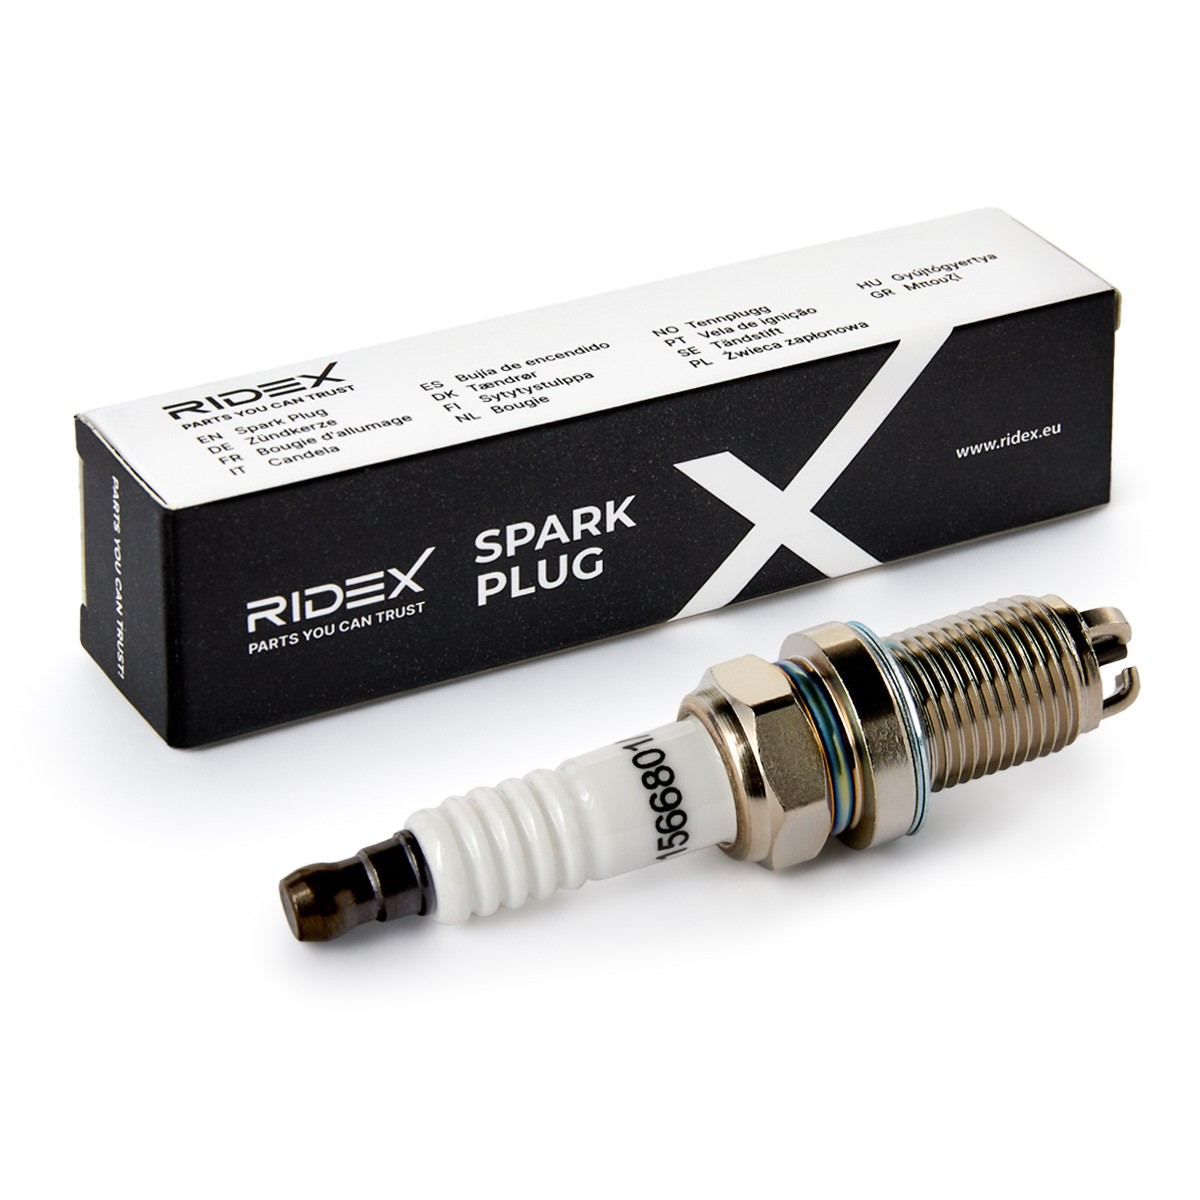 Original RIDEX Spark plug 686S0100 for AUDI A3